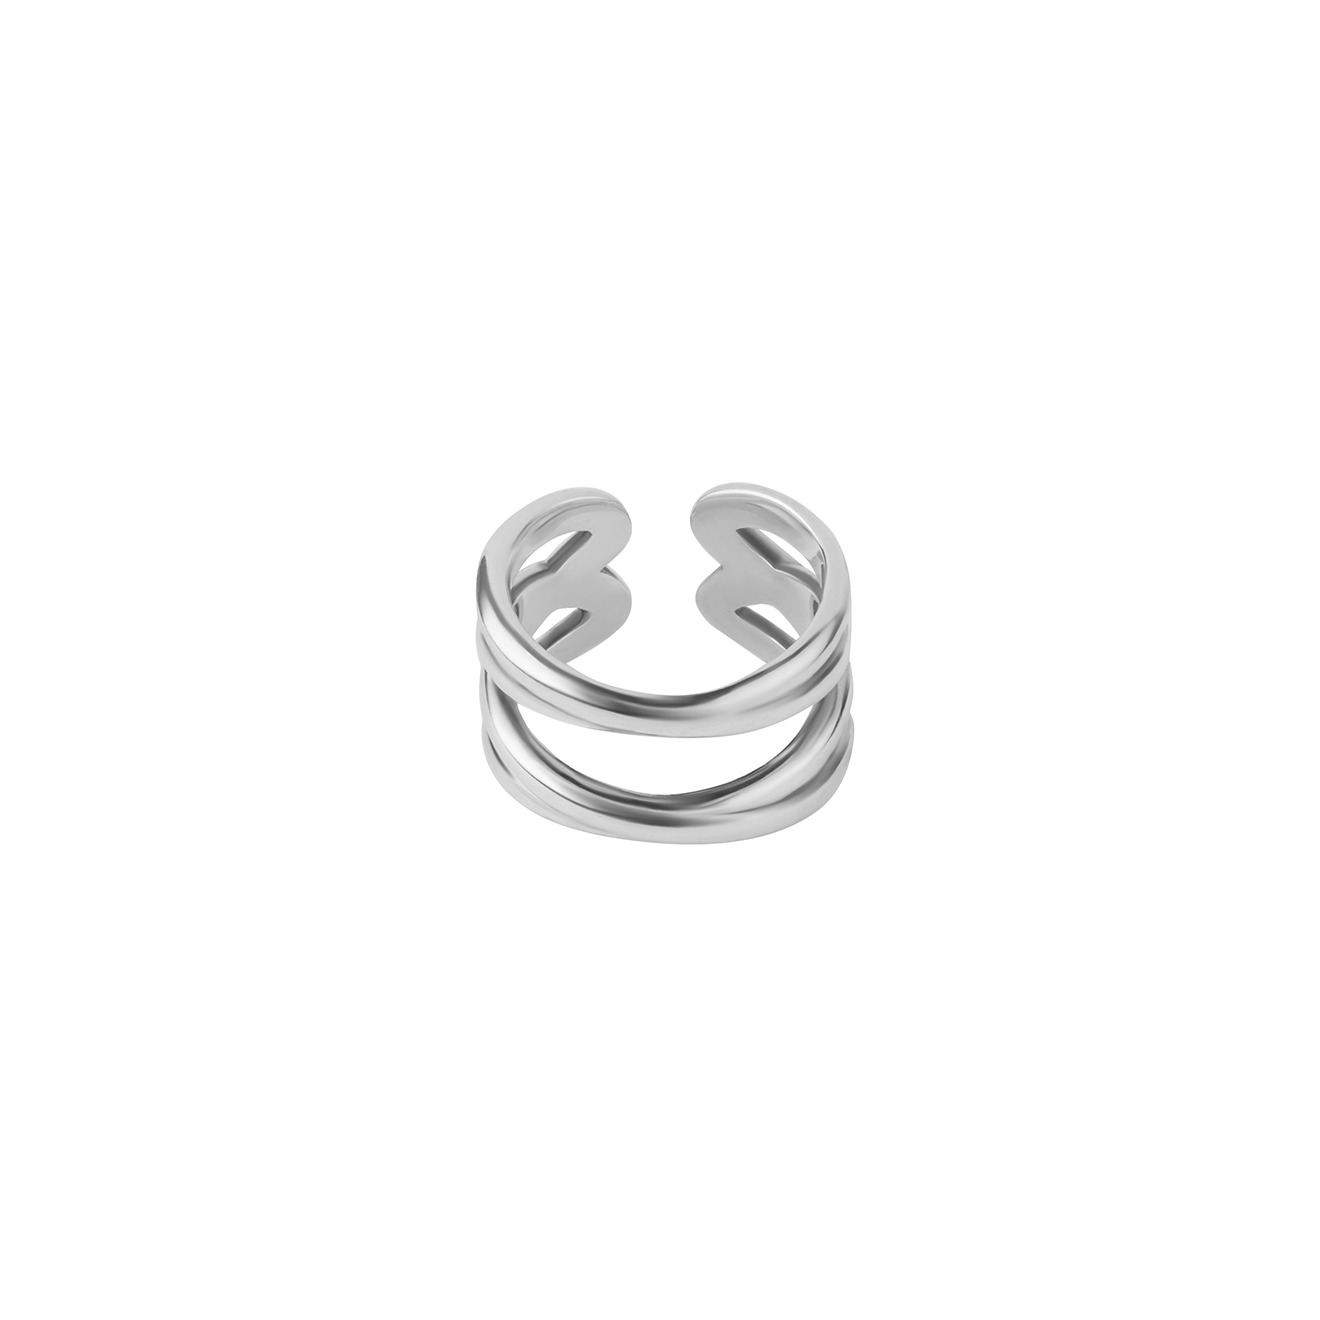 Philippe Audibert Незамкнутое двойное кольцо, покрытое серебром лопатка д торта рифленая лось посереб полир с черн